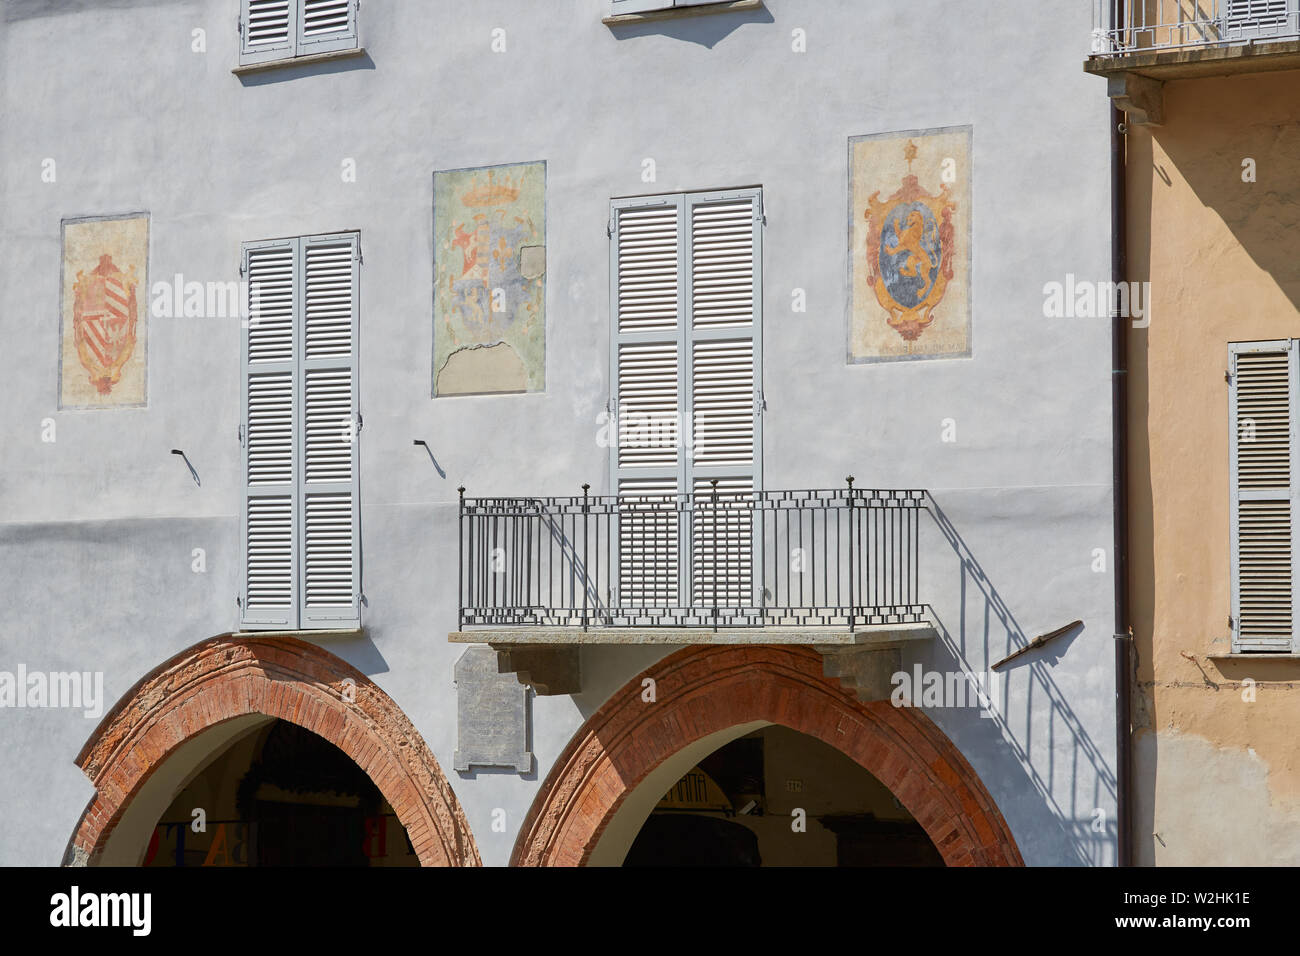 MONDOVI, Italien, 18. AUGUST 2016: hellblauer Fassade mit Fresken und roten Ziegeln arch an einem sonnigen Sommertag in Mondovi, Italien Stockfoto